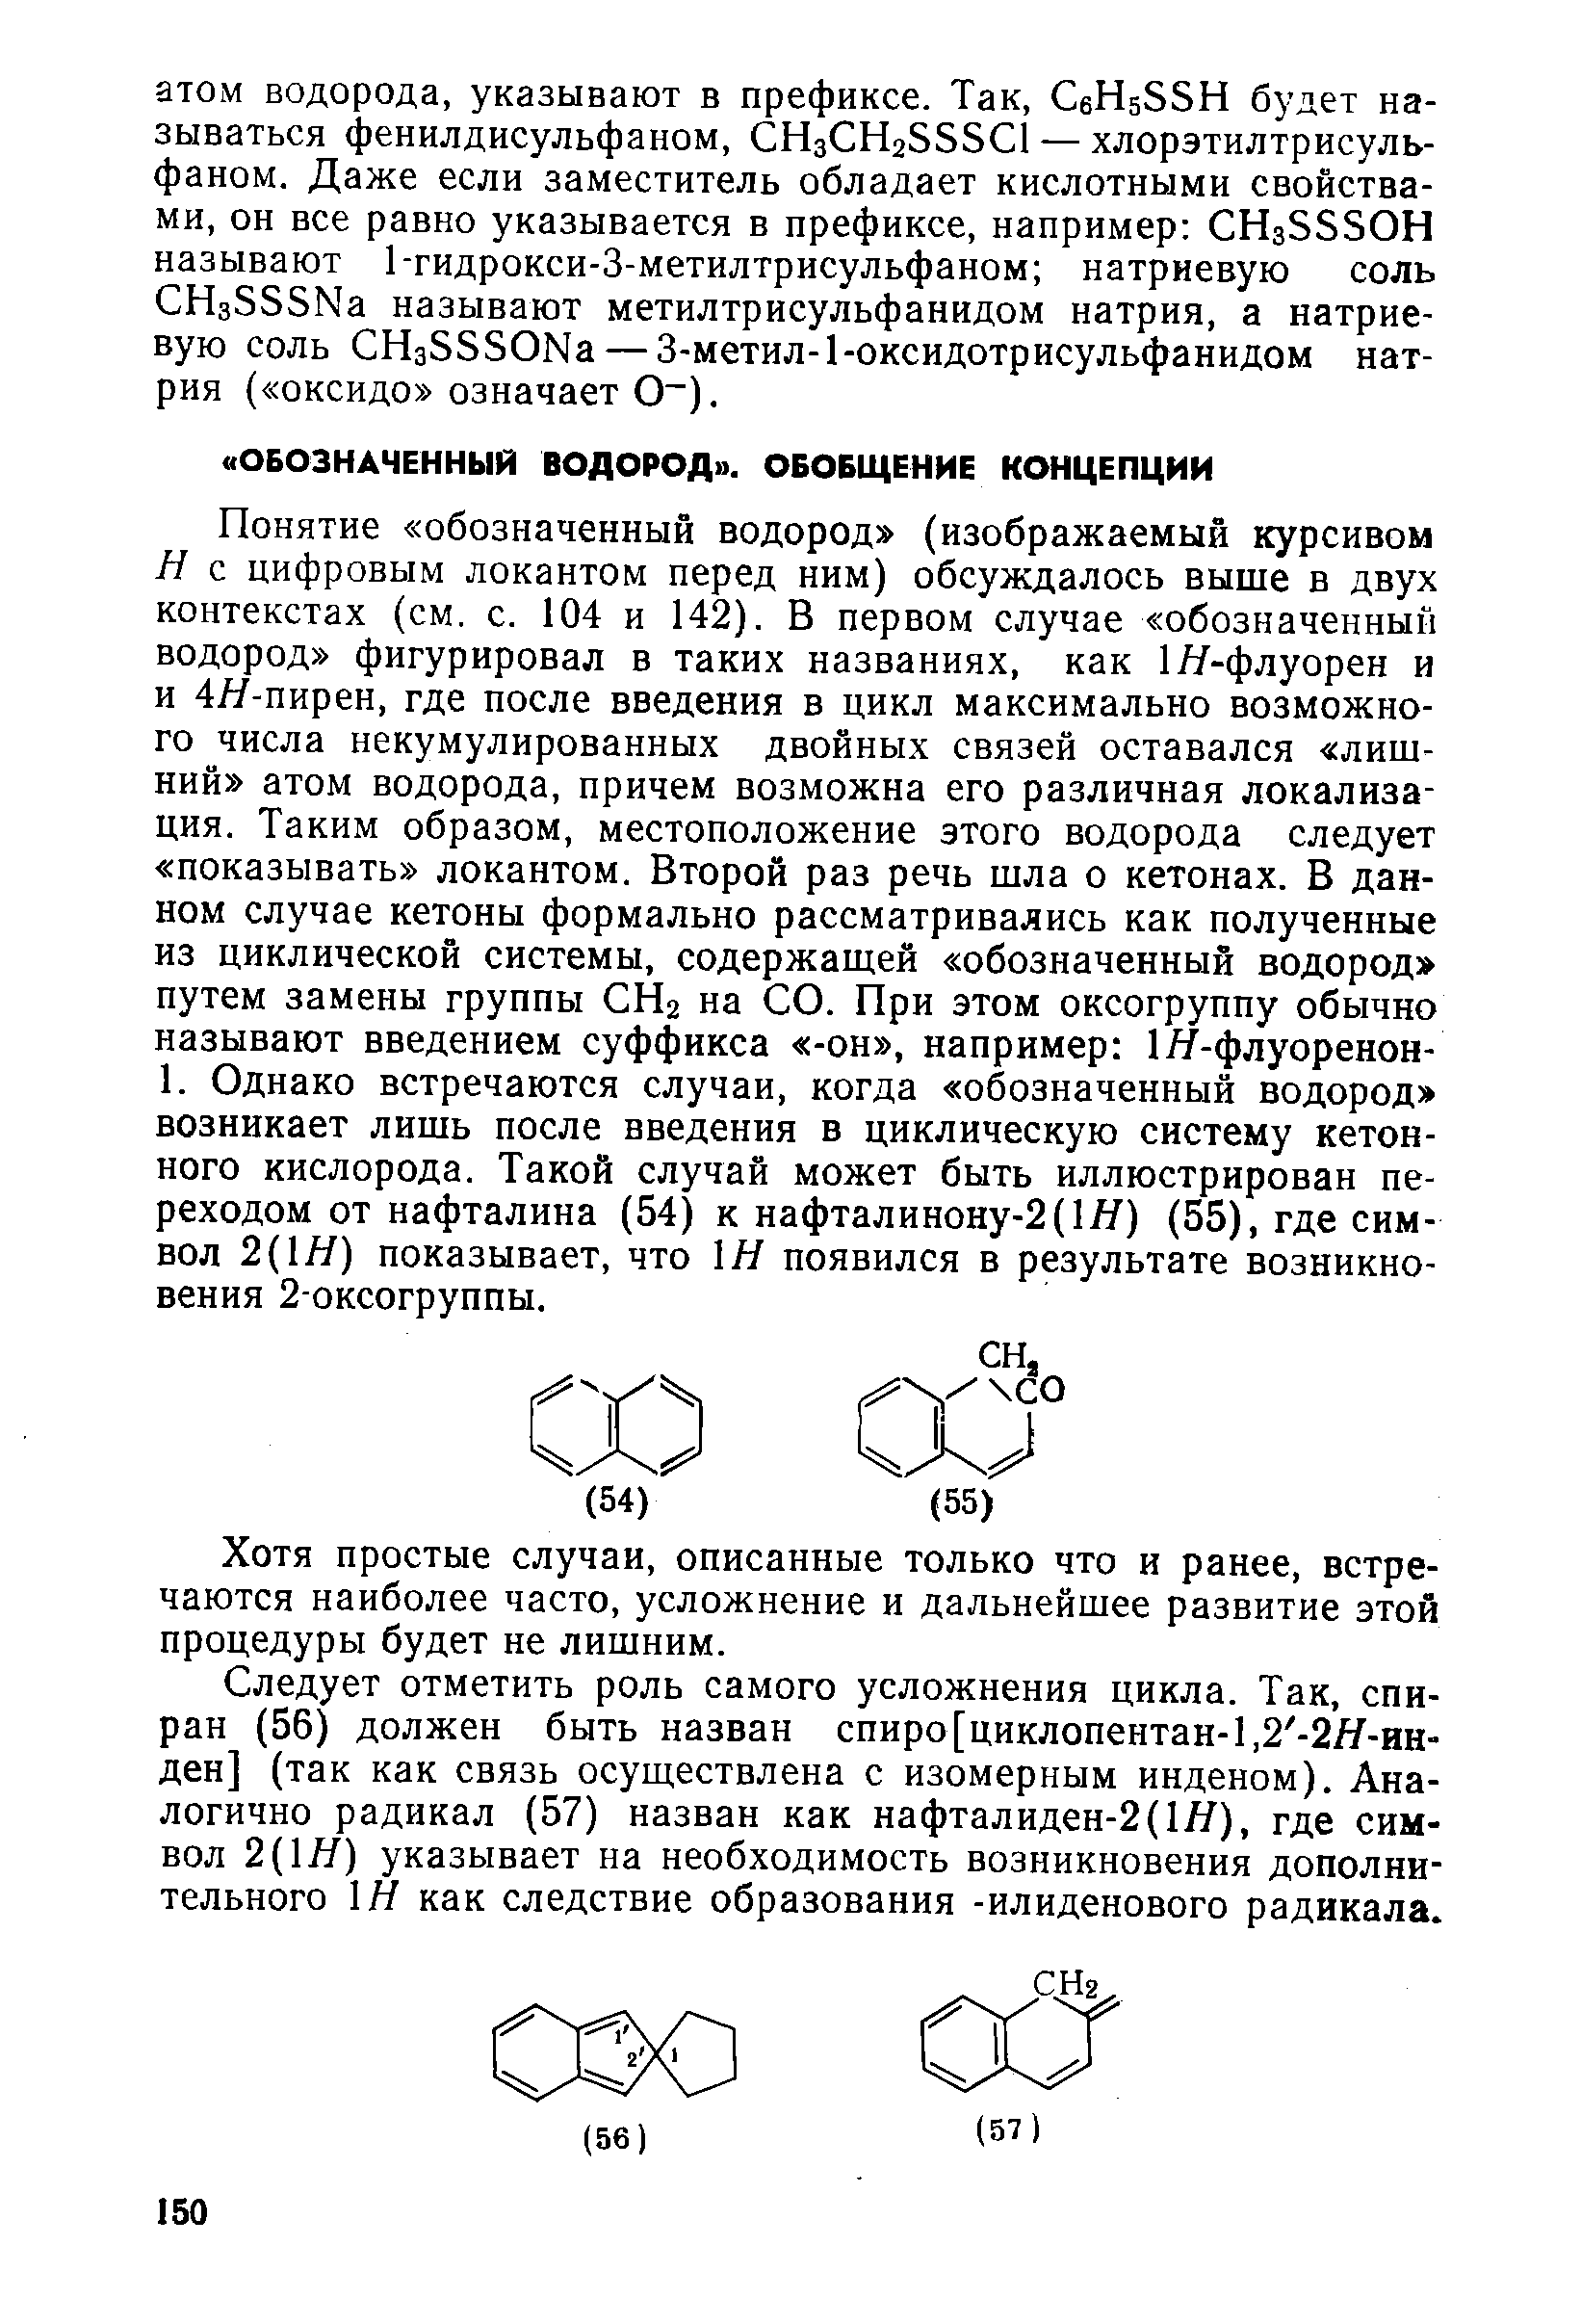 Понятие обозначенный водород (изображаемый курсивом Н с цифровым локантом перед ним) обсуждалось выше в двух контекстах (см. с. 104 и 142). В первом случае обозначенный водород фигурировал в таких названиях, как 1Я-флуорен и и 4Я-пирен, где после введения в цикл максимально возможного числа некумулированных двойных связей оставался лишний атом водорода, причем возможна его различная локализация. Таким образом, местоположение этого водорода следует показывать локантом. Второй раз речь шла о кетонах. В данном случае кетоны формально рассматривались как полученные из циклической системы, содержащей обозначенный водород путем замены группы СНг на СО. При этом оксогруппу обычно называют введением суффикса -он , например 1Я-флуоренон-1. Однако встречаются случаи, когда обозначенный водород возникает лишь после введения в циклическую систему кетон-ного кислорода. Такой случай может быть иллюстрирован переходом от нафталина (54) к нафталинону-2(1Я) (55), где символ 2(1Я) показывает, что Н появился в результате возникновения 2-оксогруппы.